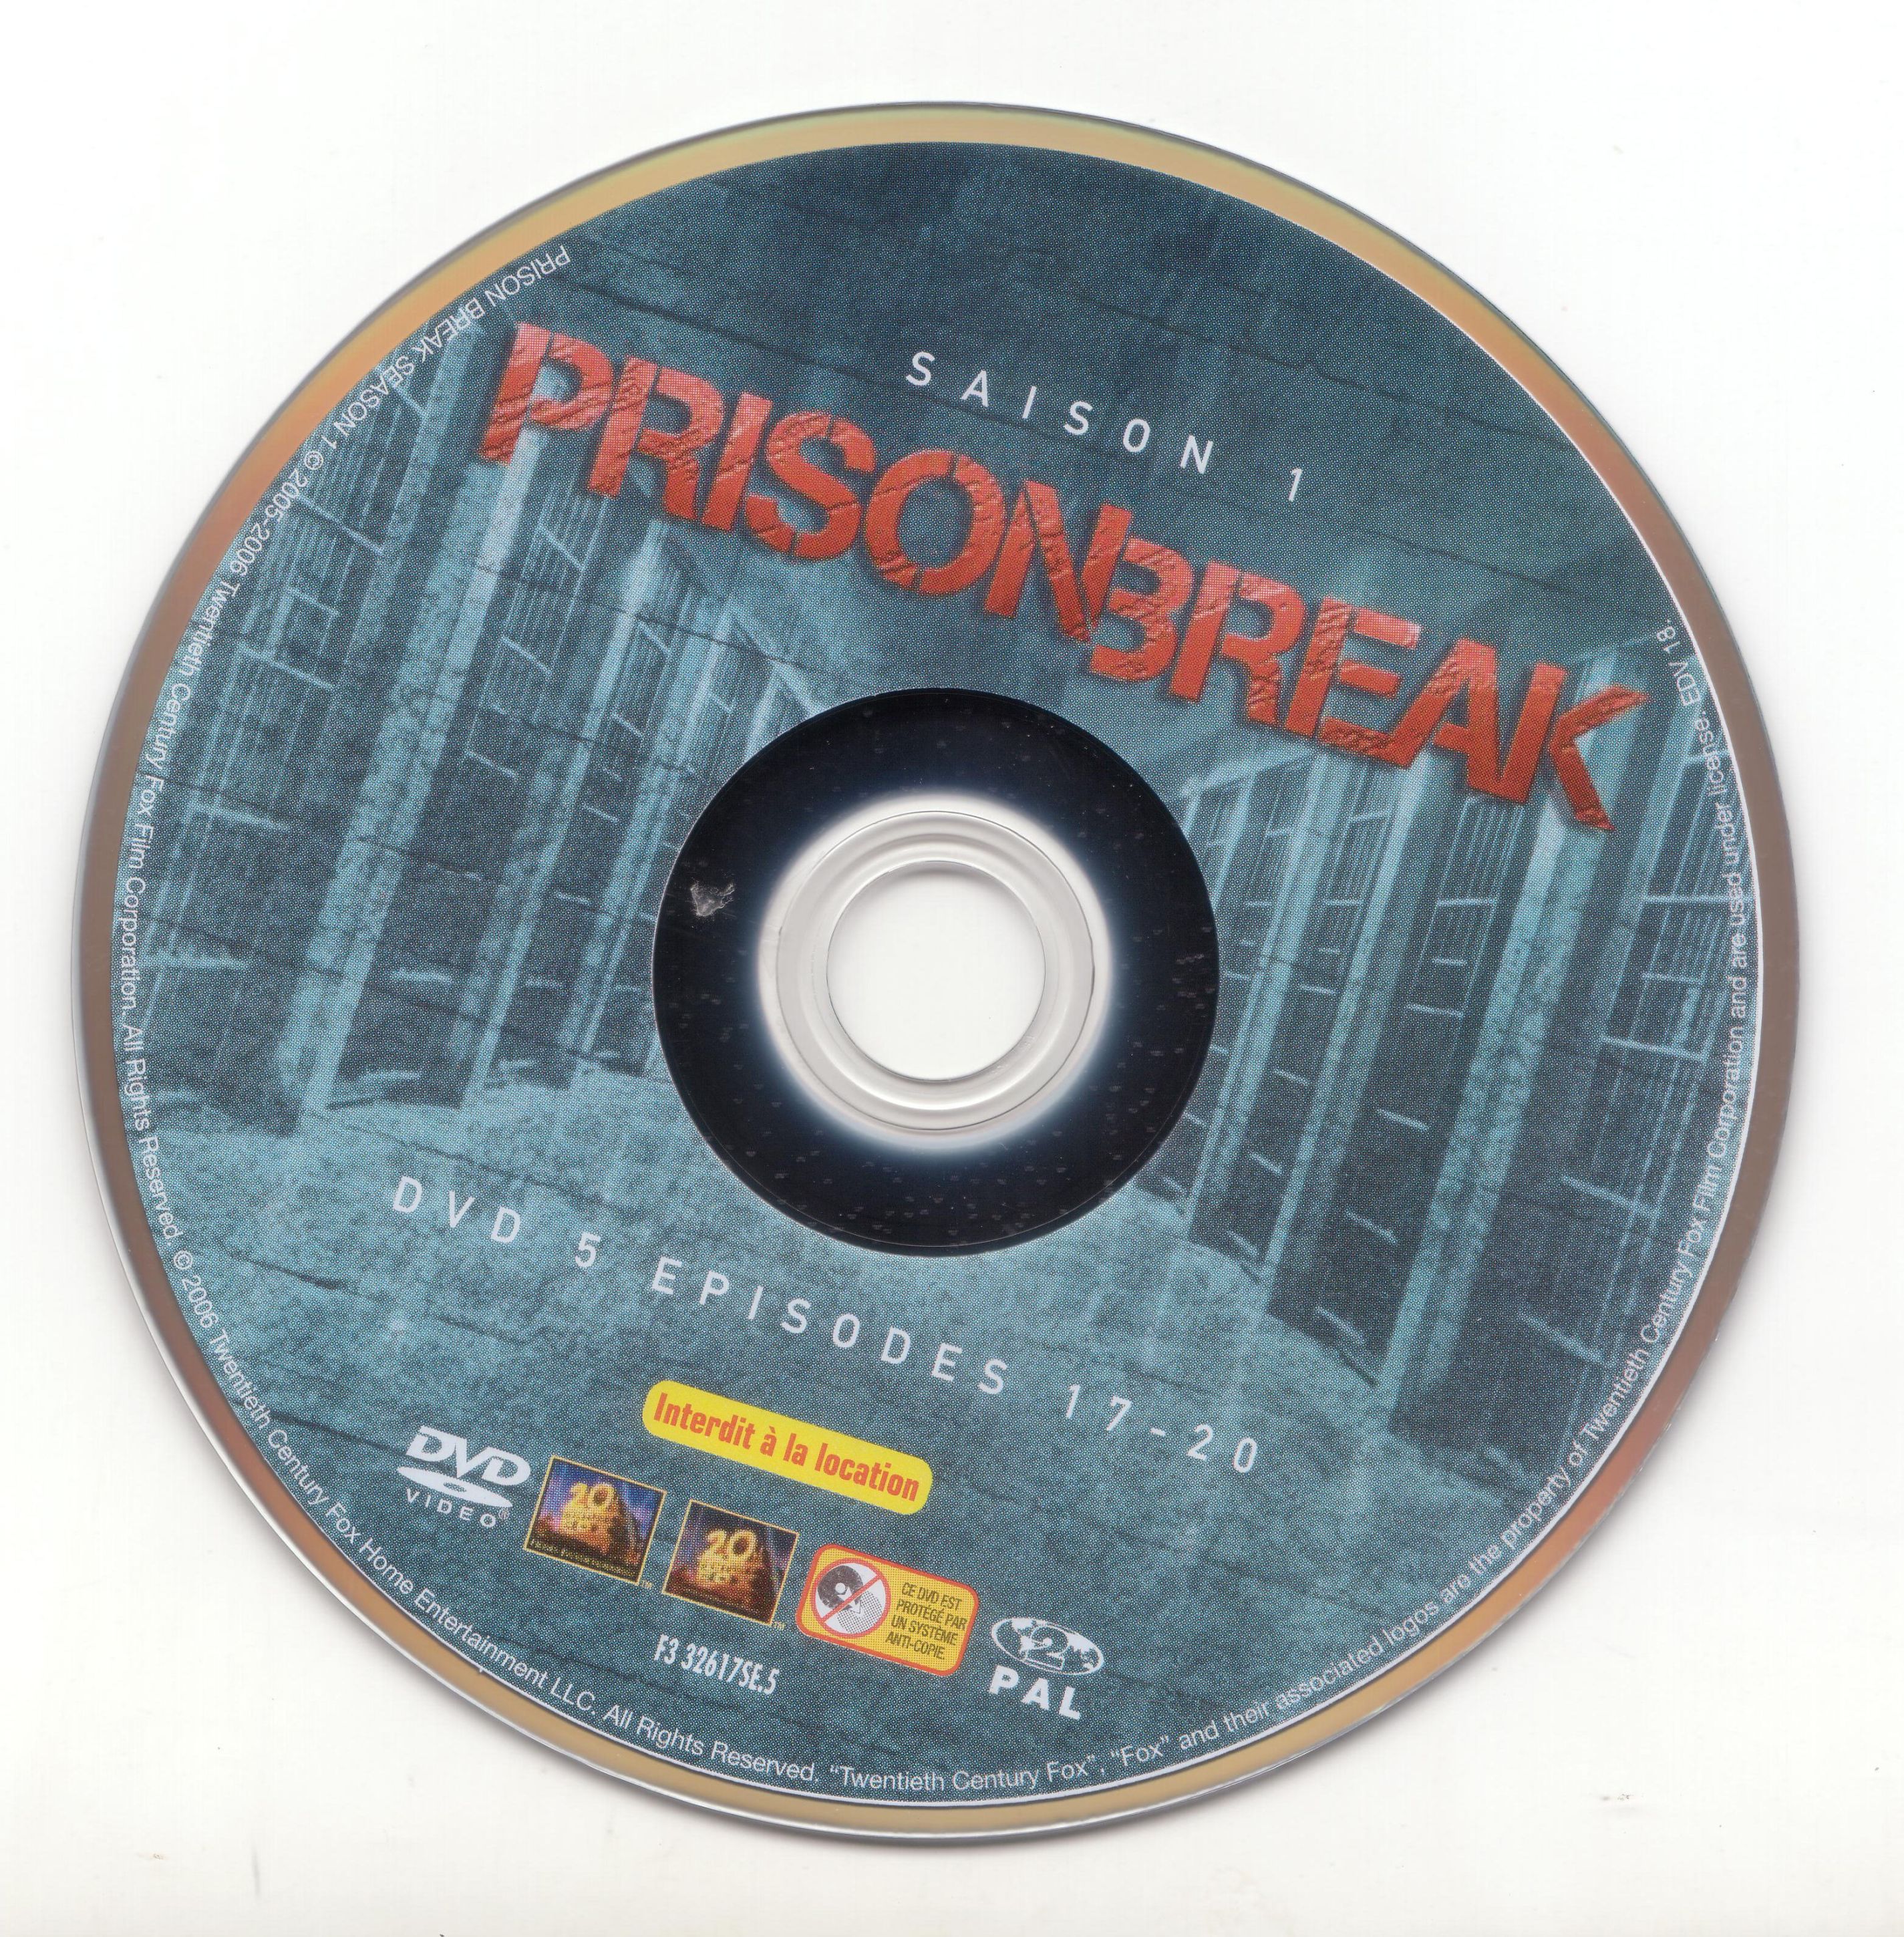 Prison break saison 1 dvd 5